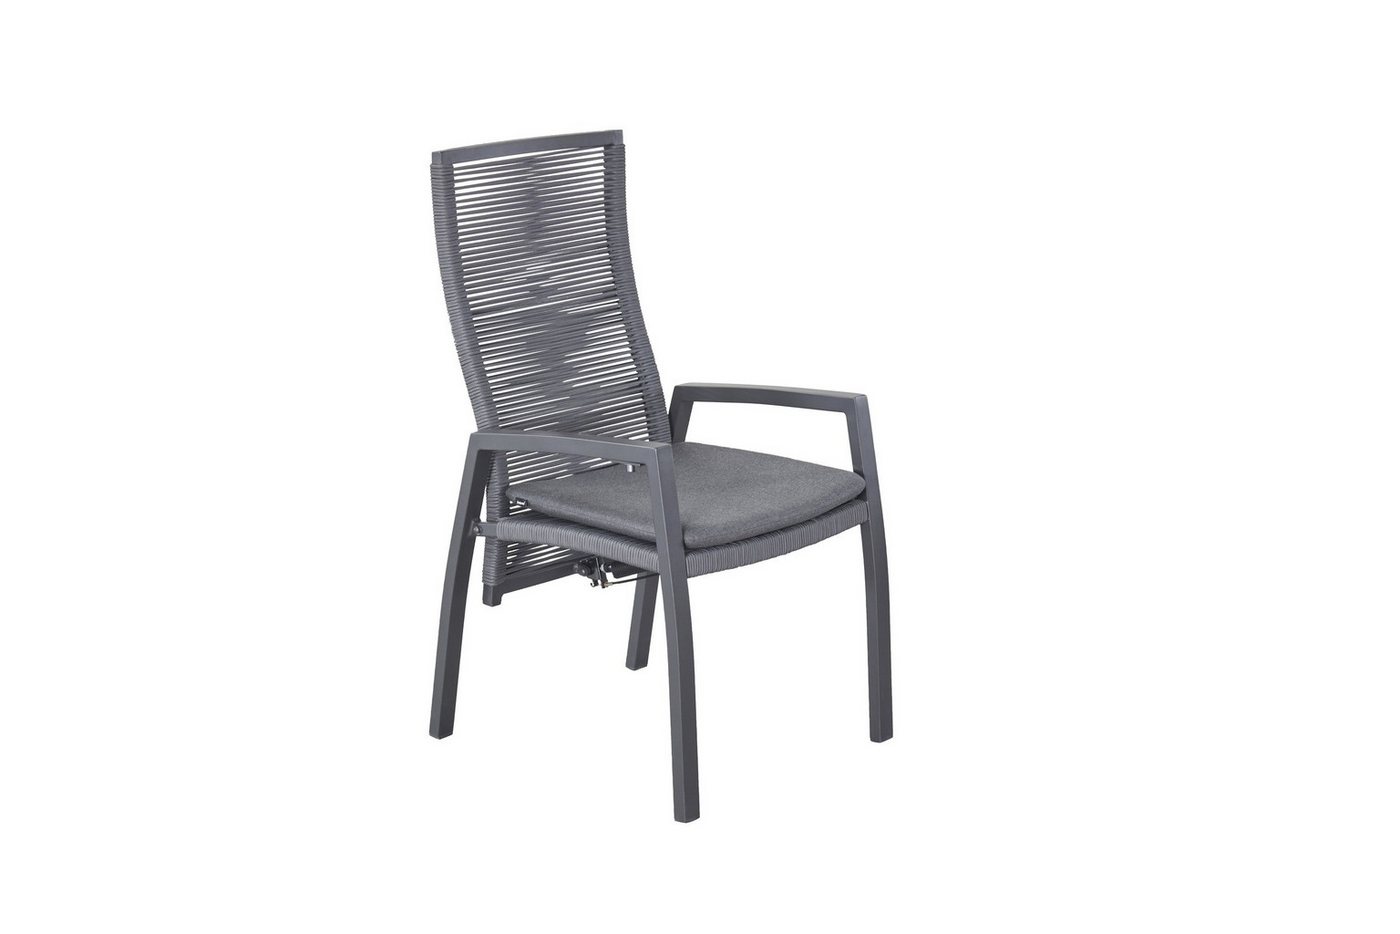 dasmöbelwerk Gartenstuhl Positionsstuhl Ohio Gartenstuhl Esstischstuhl mit Sitzkissen grau, verstellbarer Rückenlehne von dasmöbelwerk